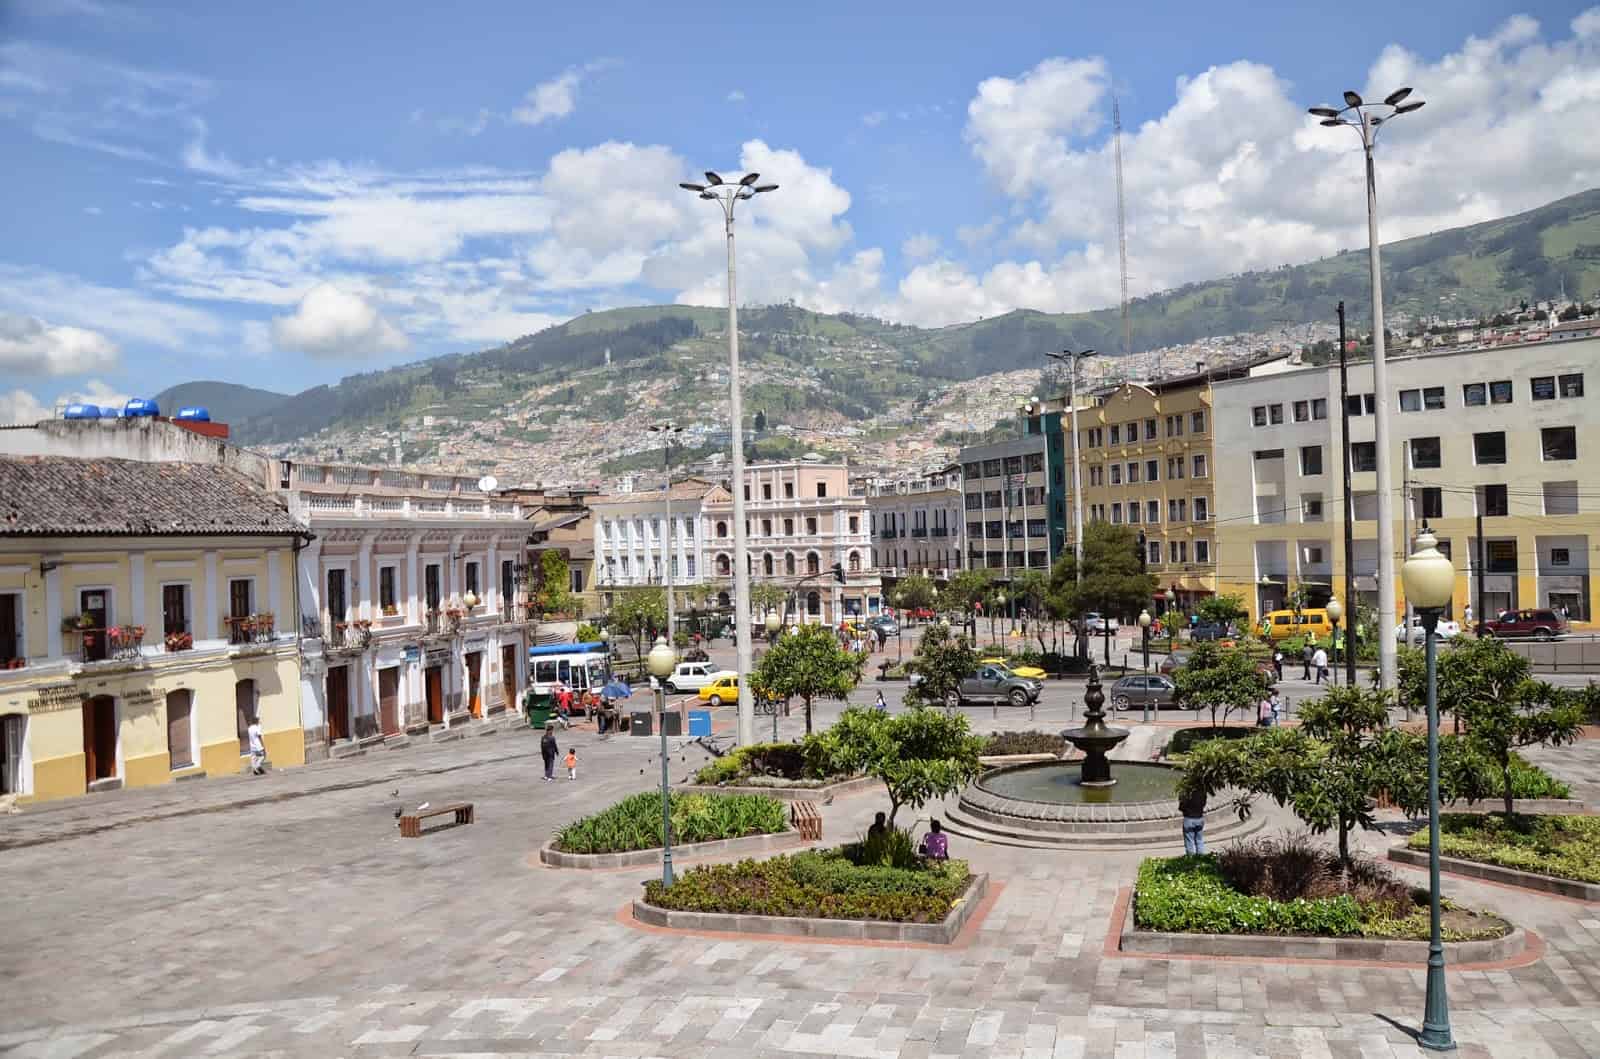 Plaza de San Blas in Quito, Ecuador